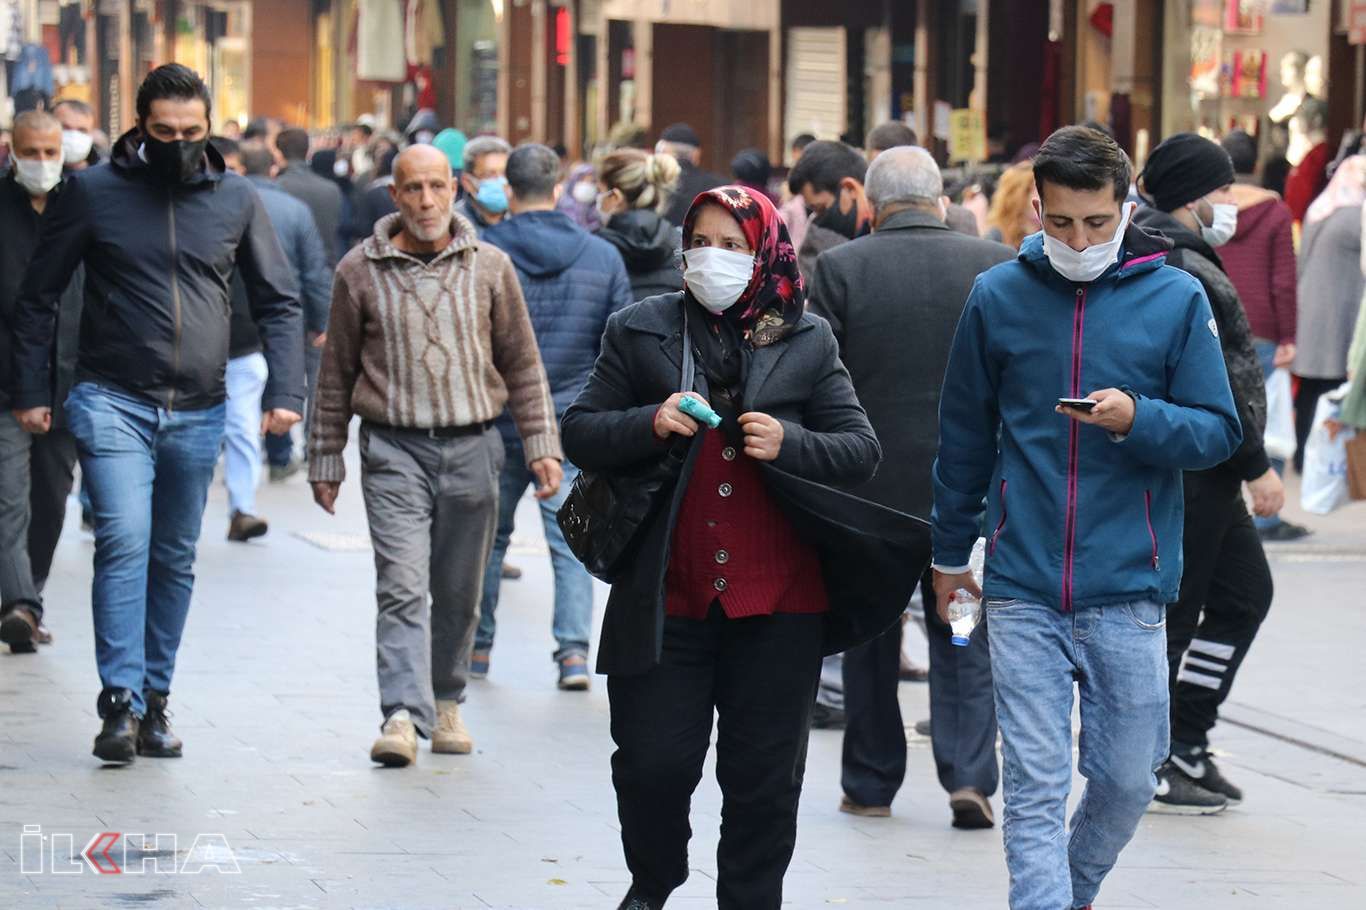 Gaziantep'te Covid-19 kurallarını ihlal eden 530 kişiye para cezası